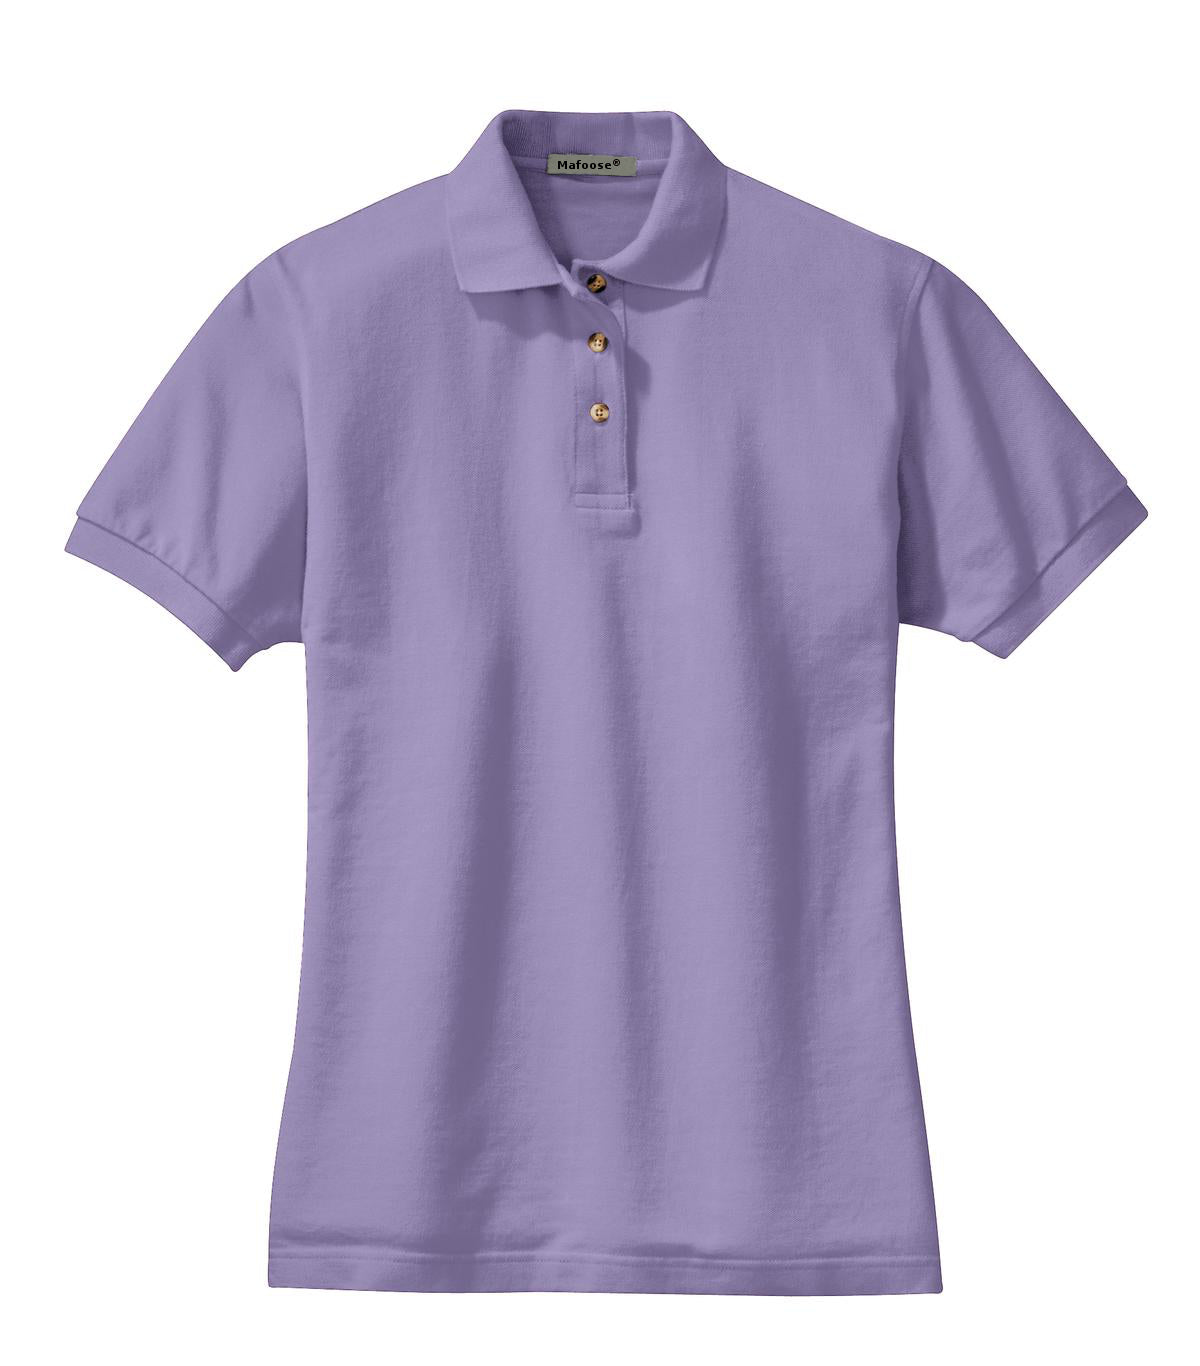 Mafoose Women's Heavyweight Cotton Pique Polo Shirt Navy-Front